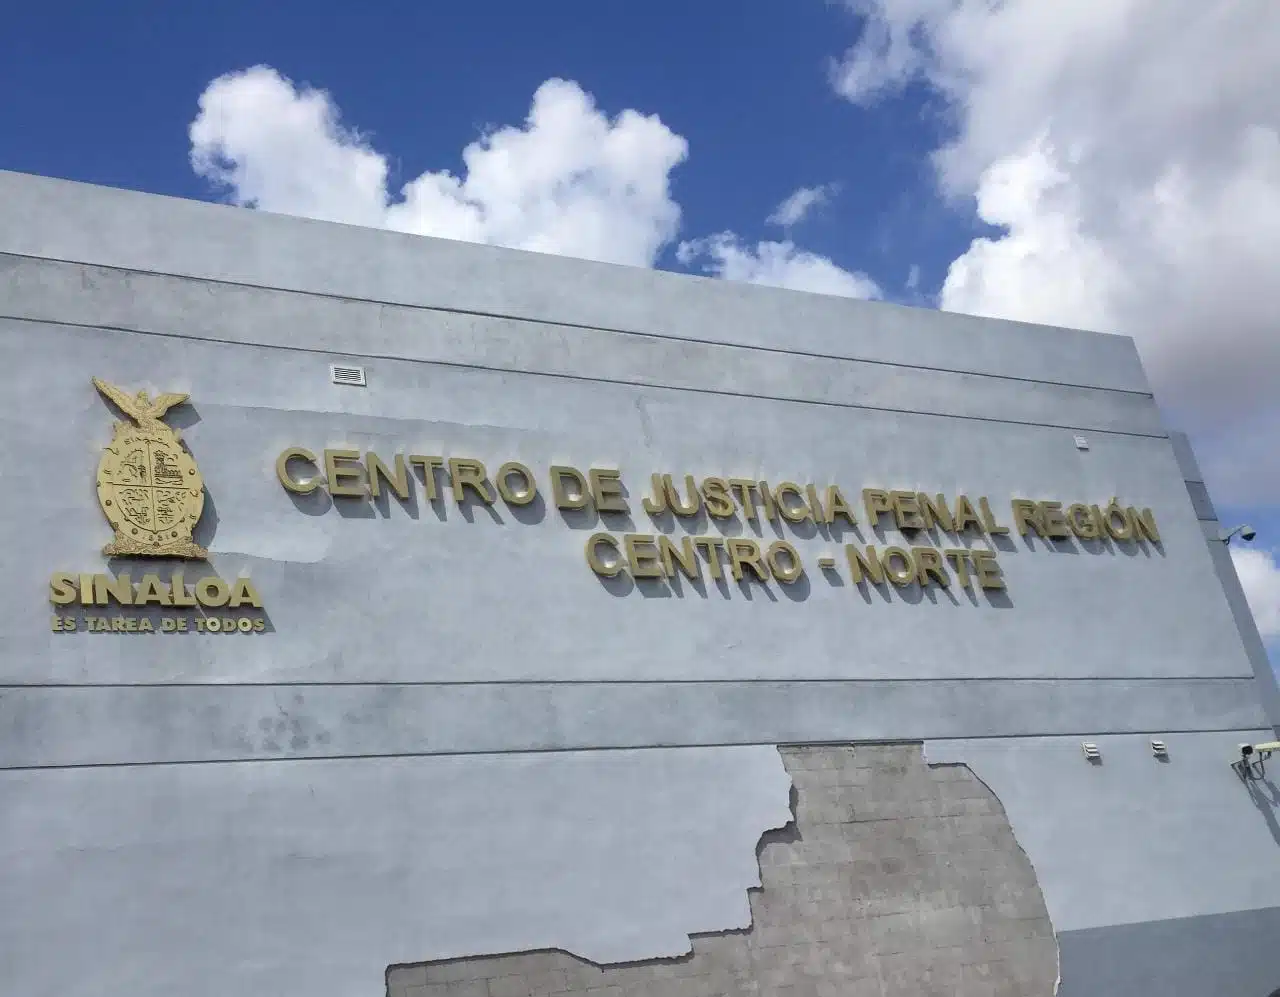 Centro de Justicia Penal Zona Centro Norte